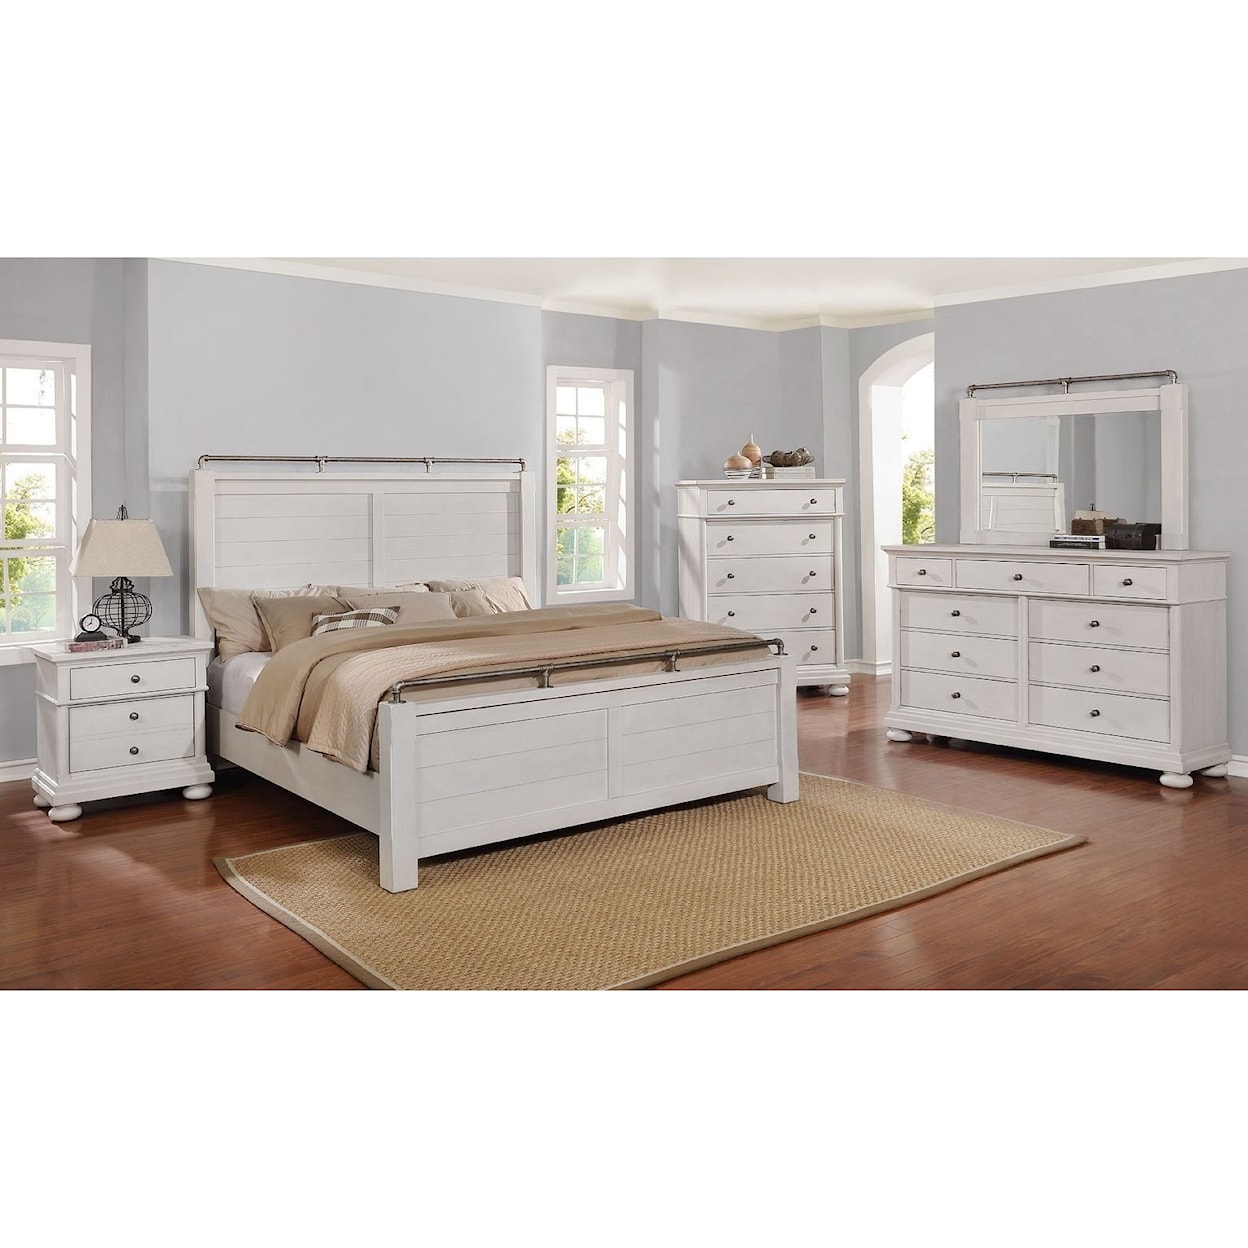 Avalon Furniture Bellville - White King Bedroom Group